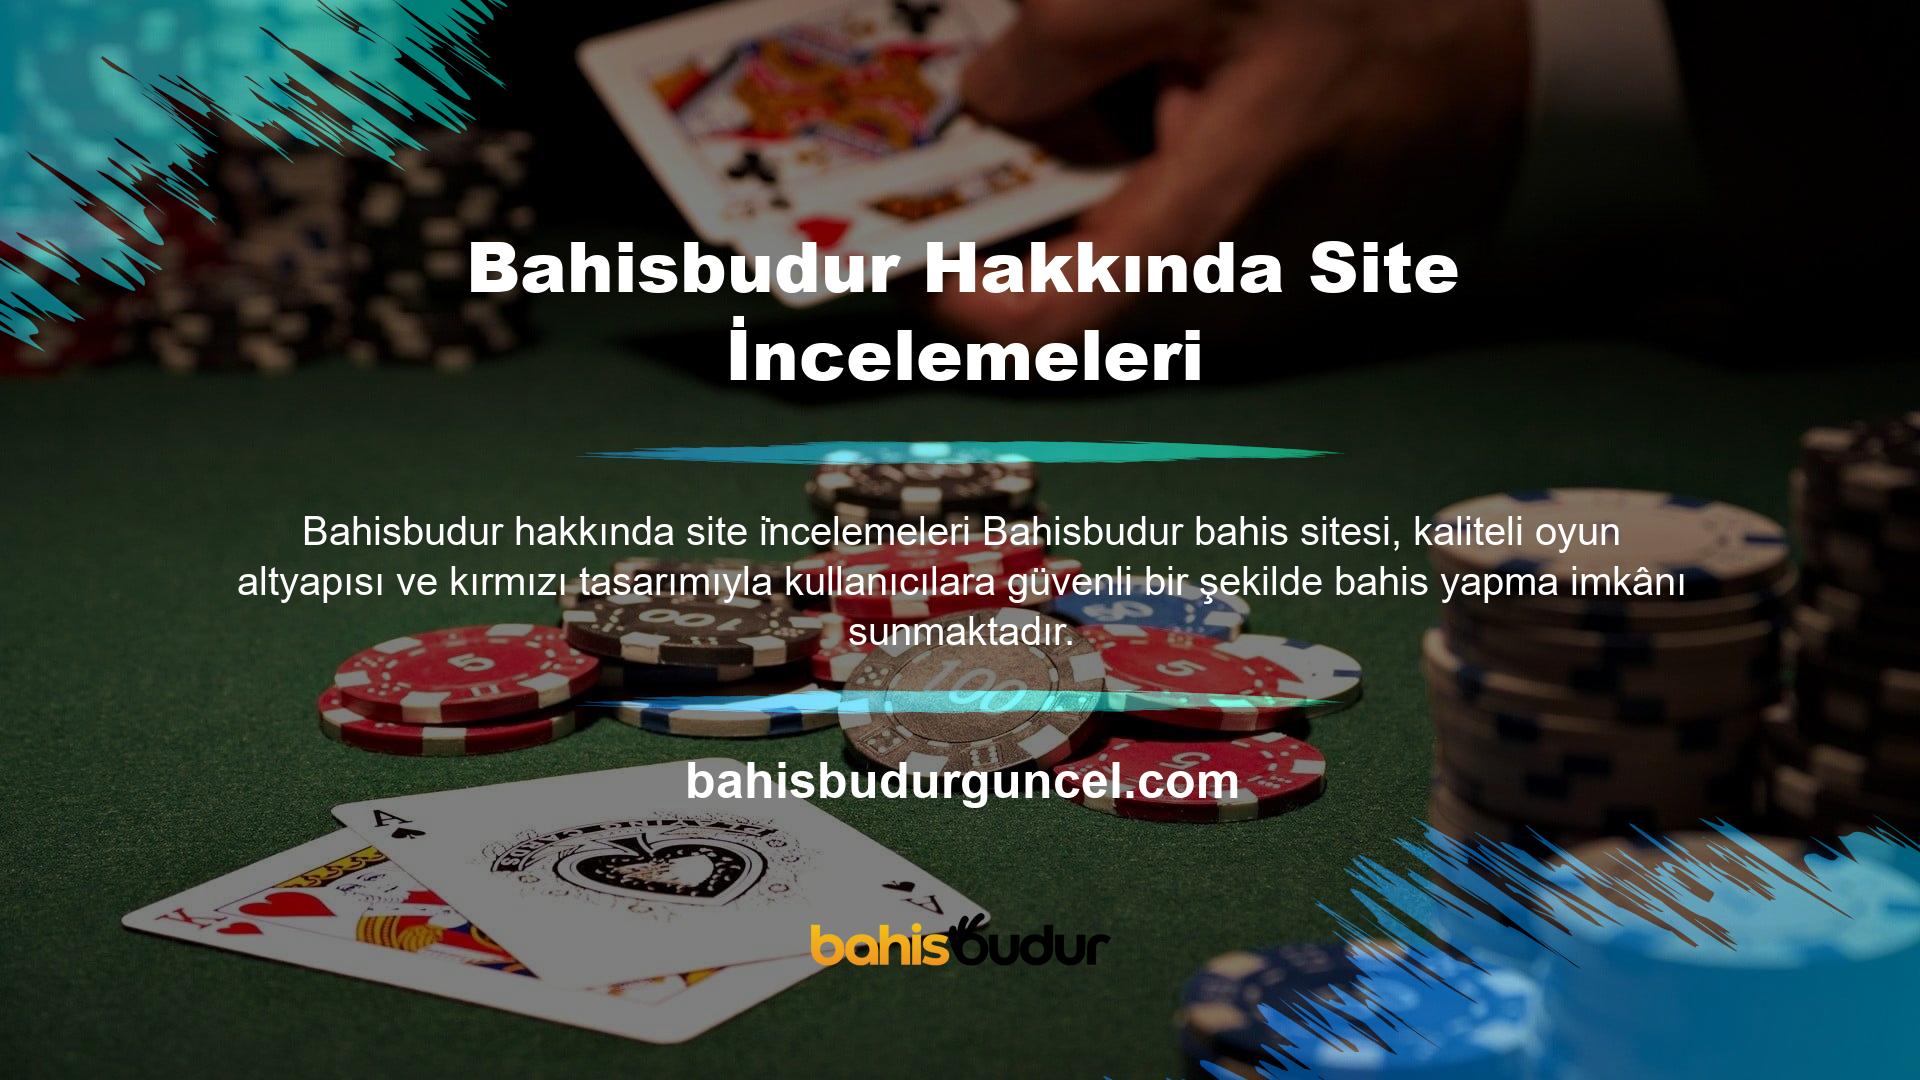 Bu sitede Türkçe, Rusça ve İngilizce olmak üzere üç dilde bahis oynayabilirsiniz